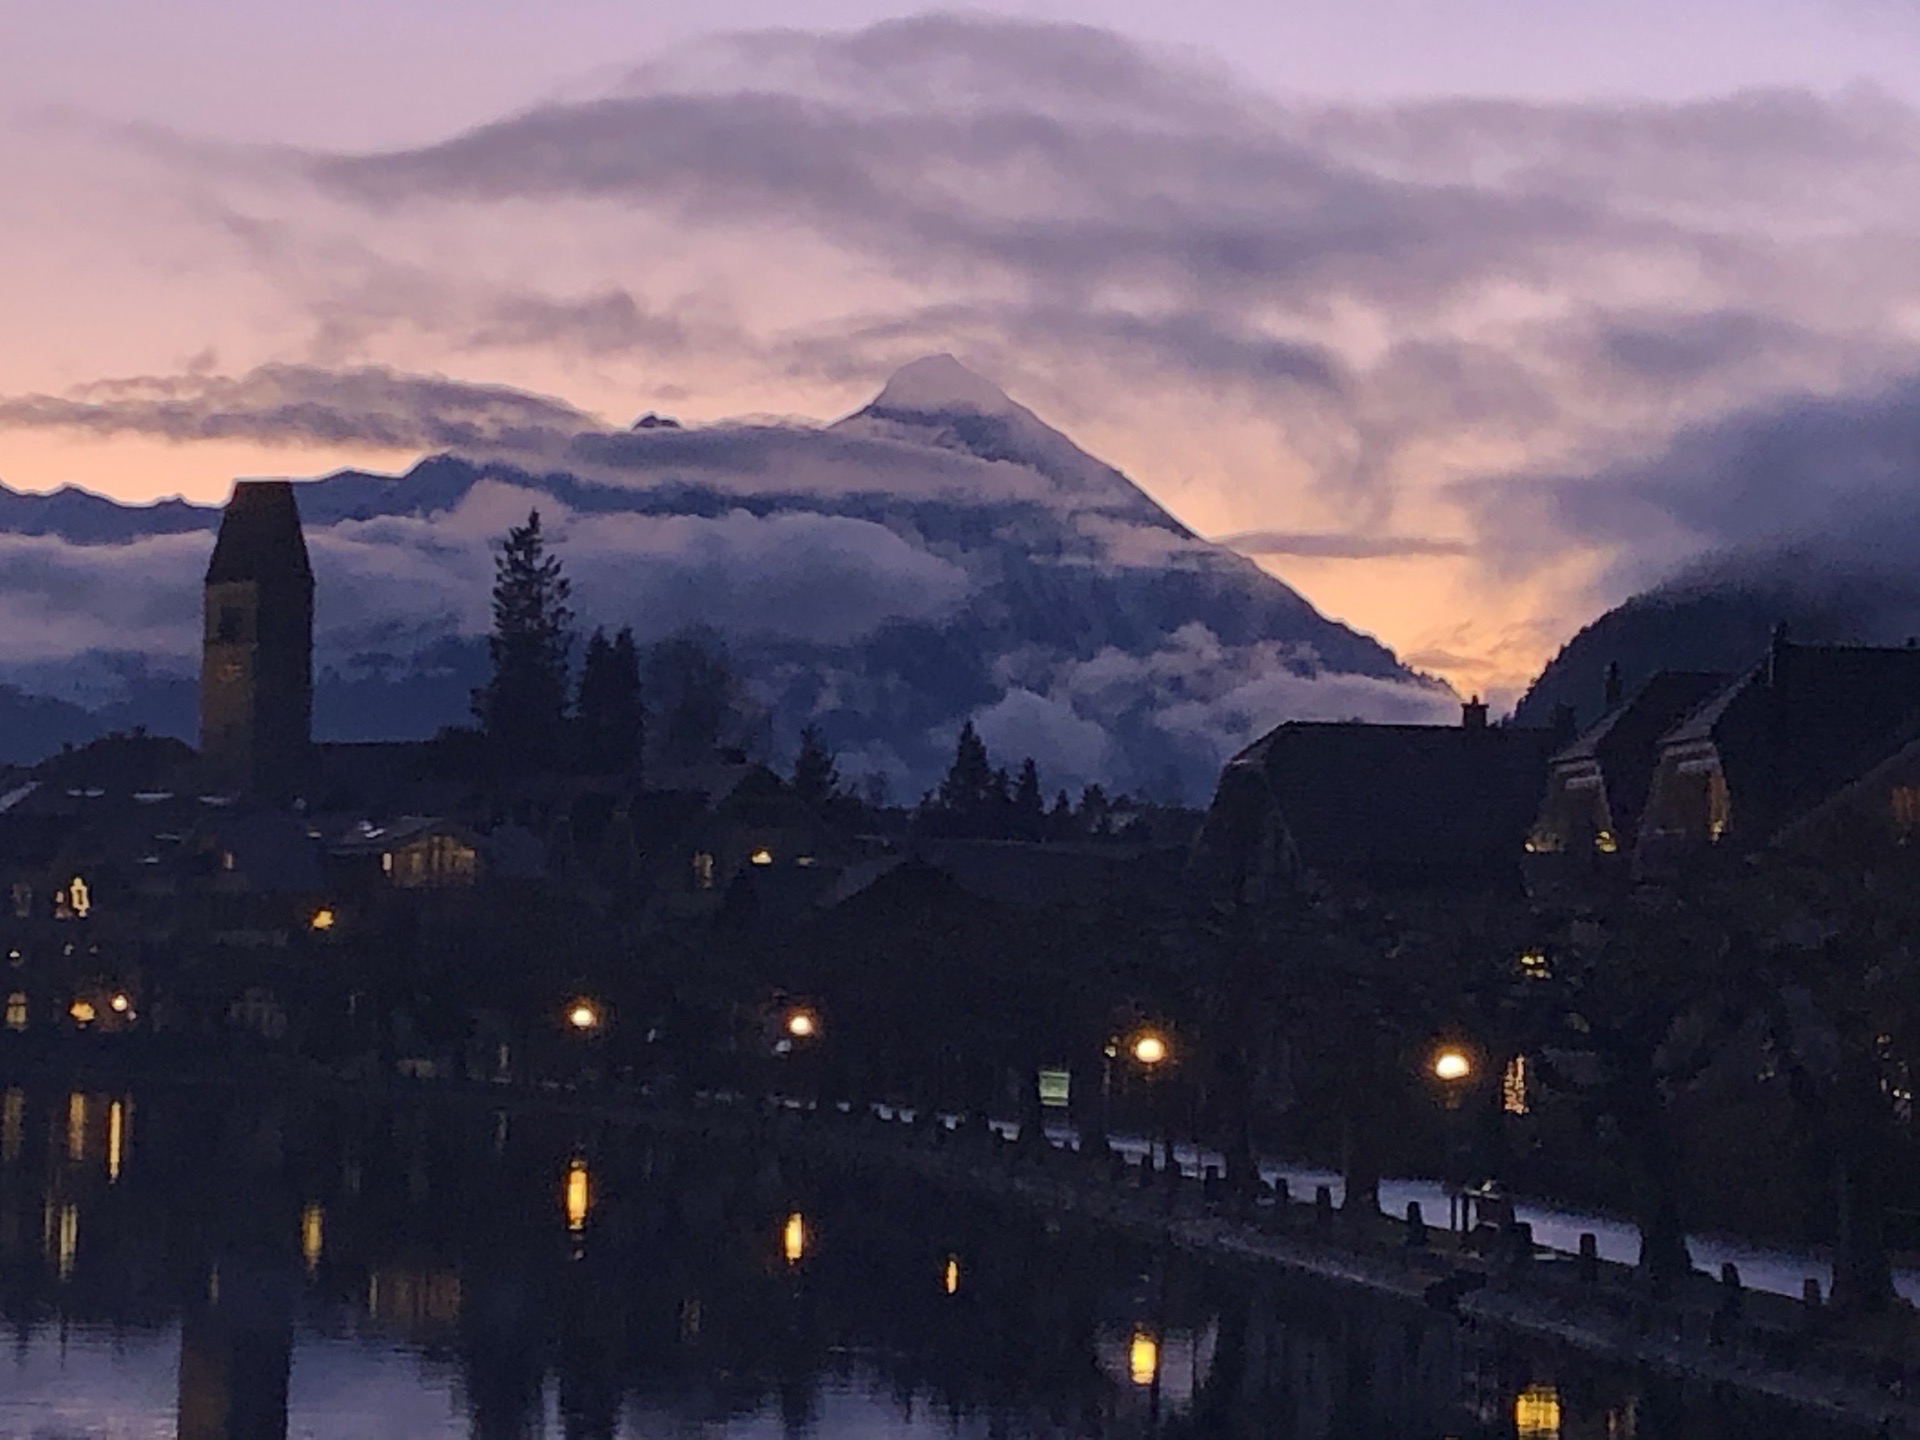 瑞士阿尔卑斯山脉脚下小镇夜景 房屋别墅依山傍水，高山皑皑白雪依稀可见，山涧溪水清澈见底，池中绿头鸭嬉